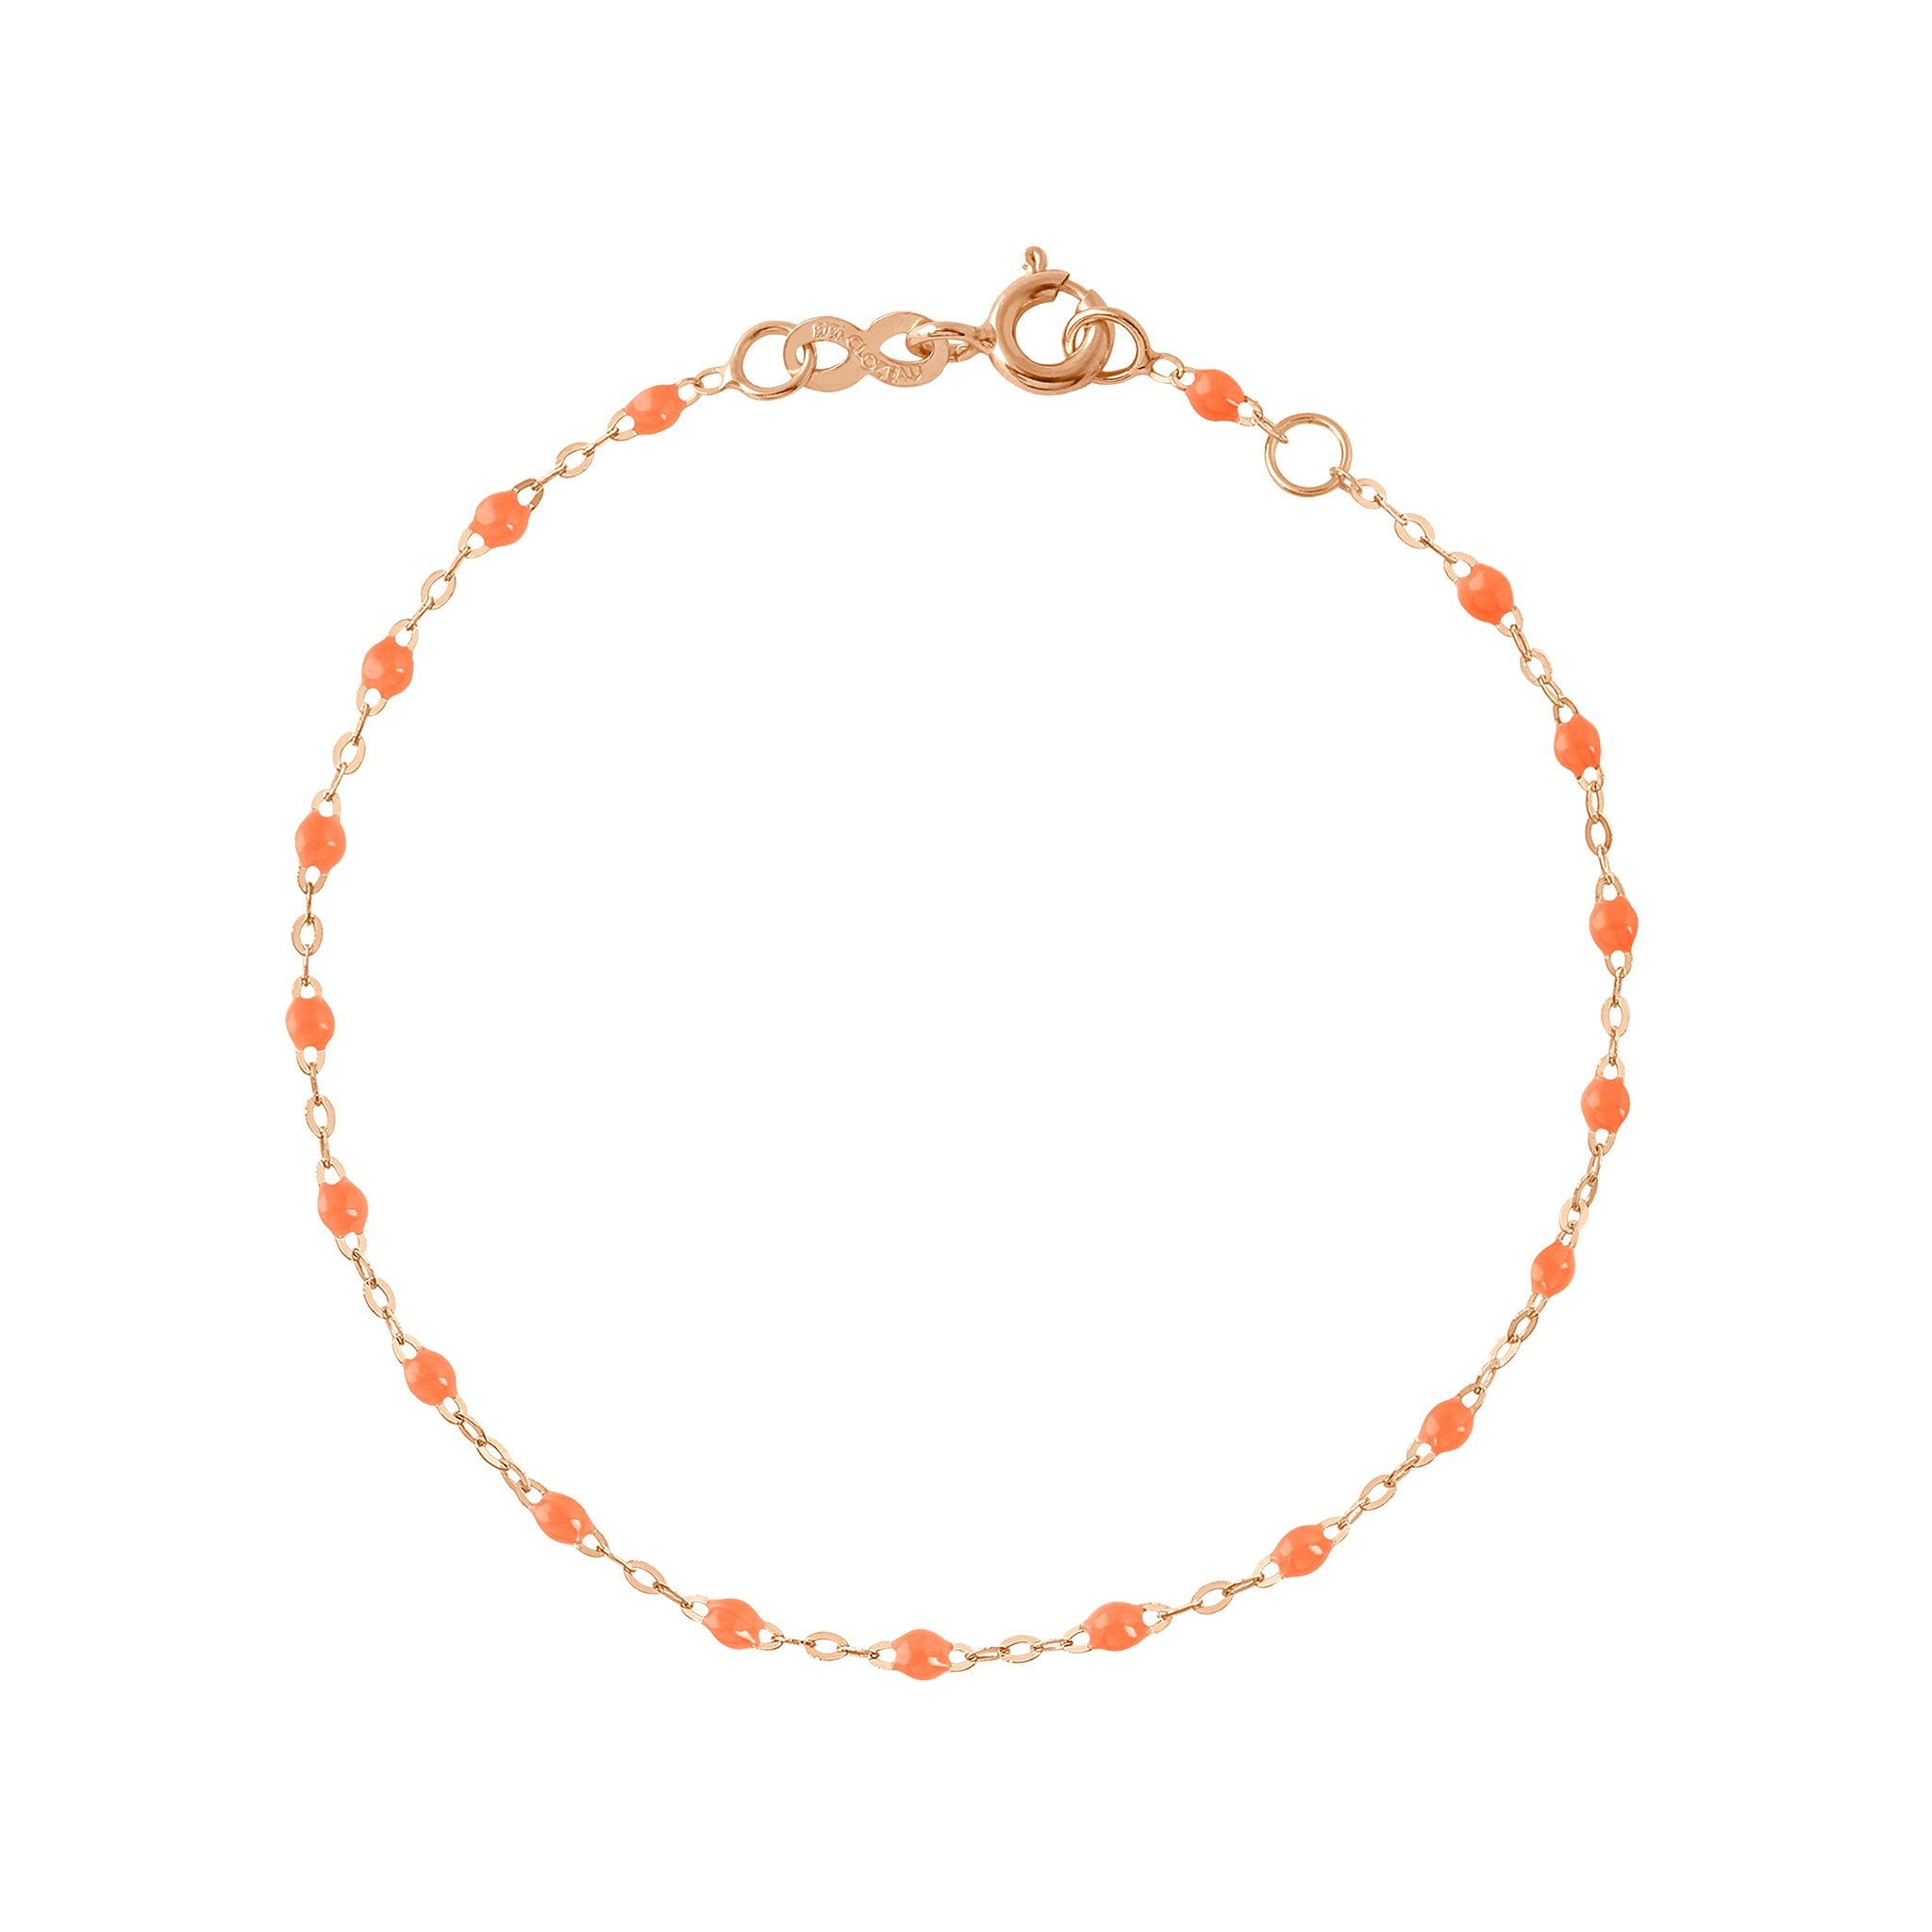 Bracelet orange fluo Classique Gigi, or rose, 17 cm